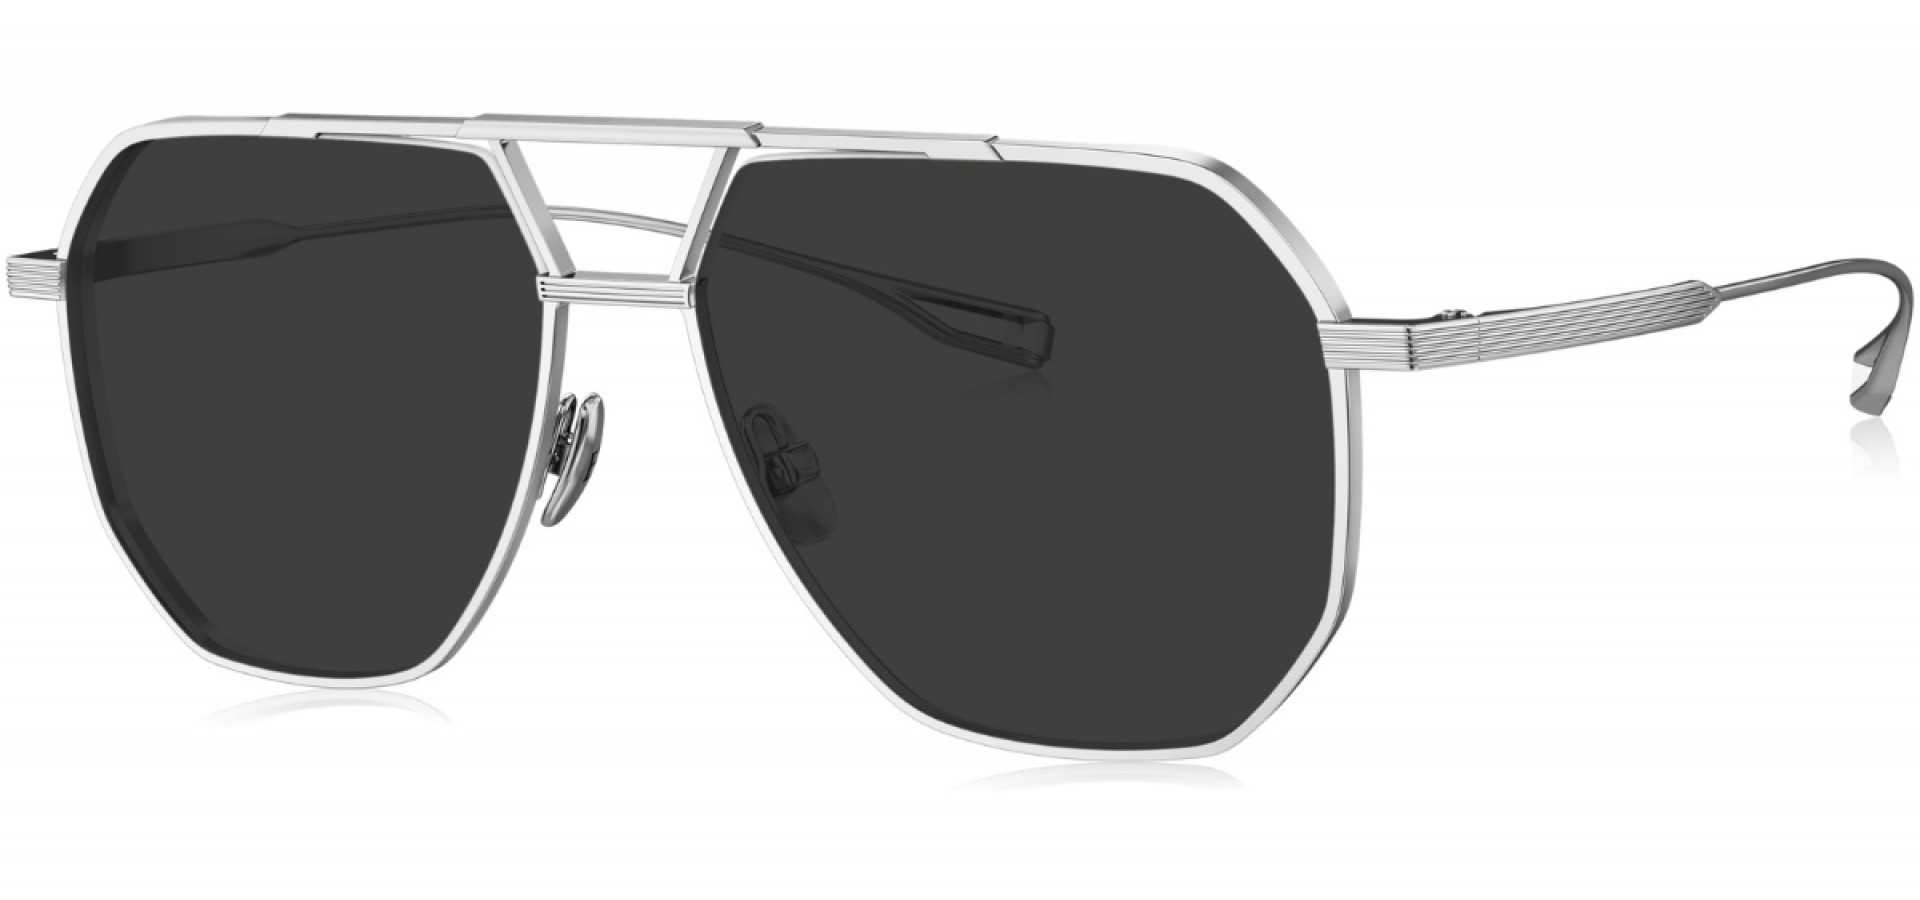 Sunčane naočale Bolon BV1021 56 C90: Boja: Silver, Veličina: 56-14-145, Spol: muške, Materijal: titanij